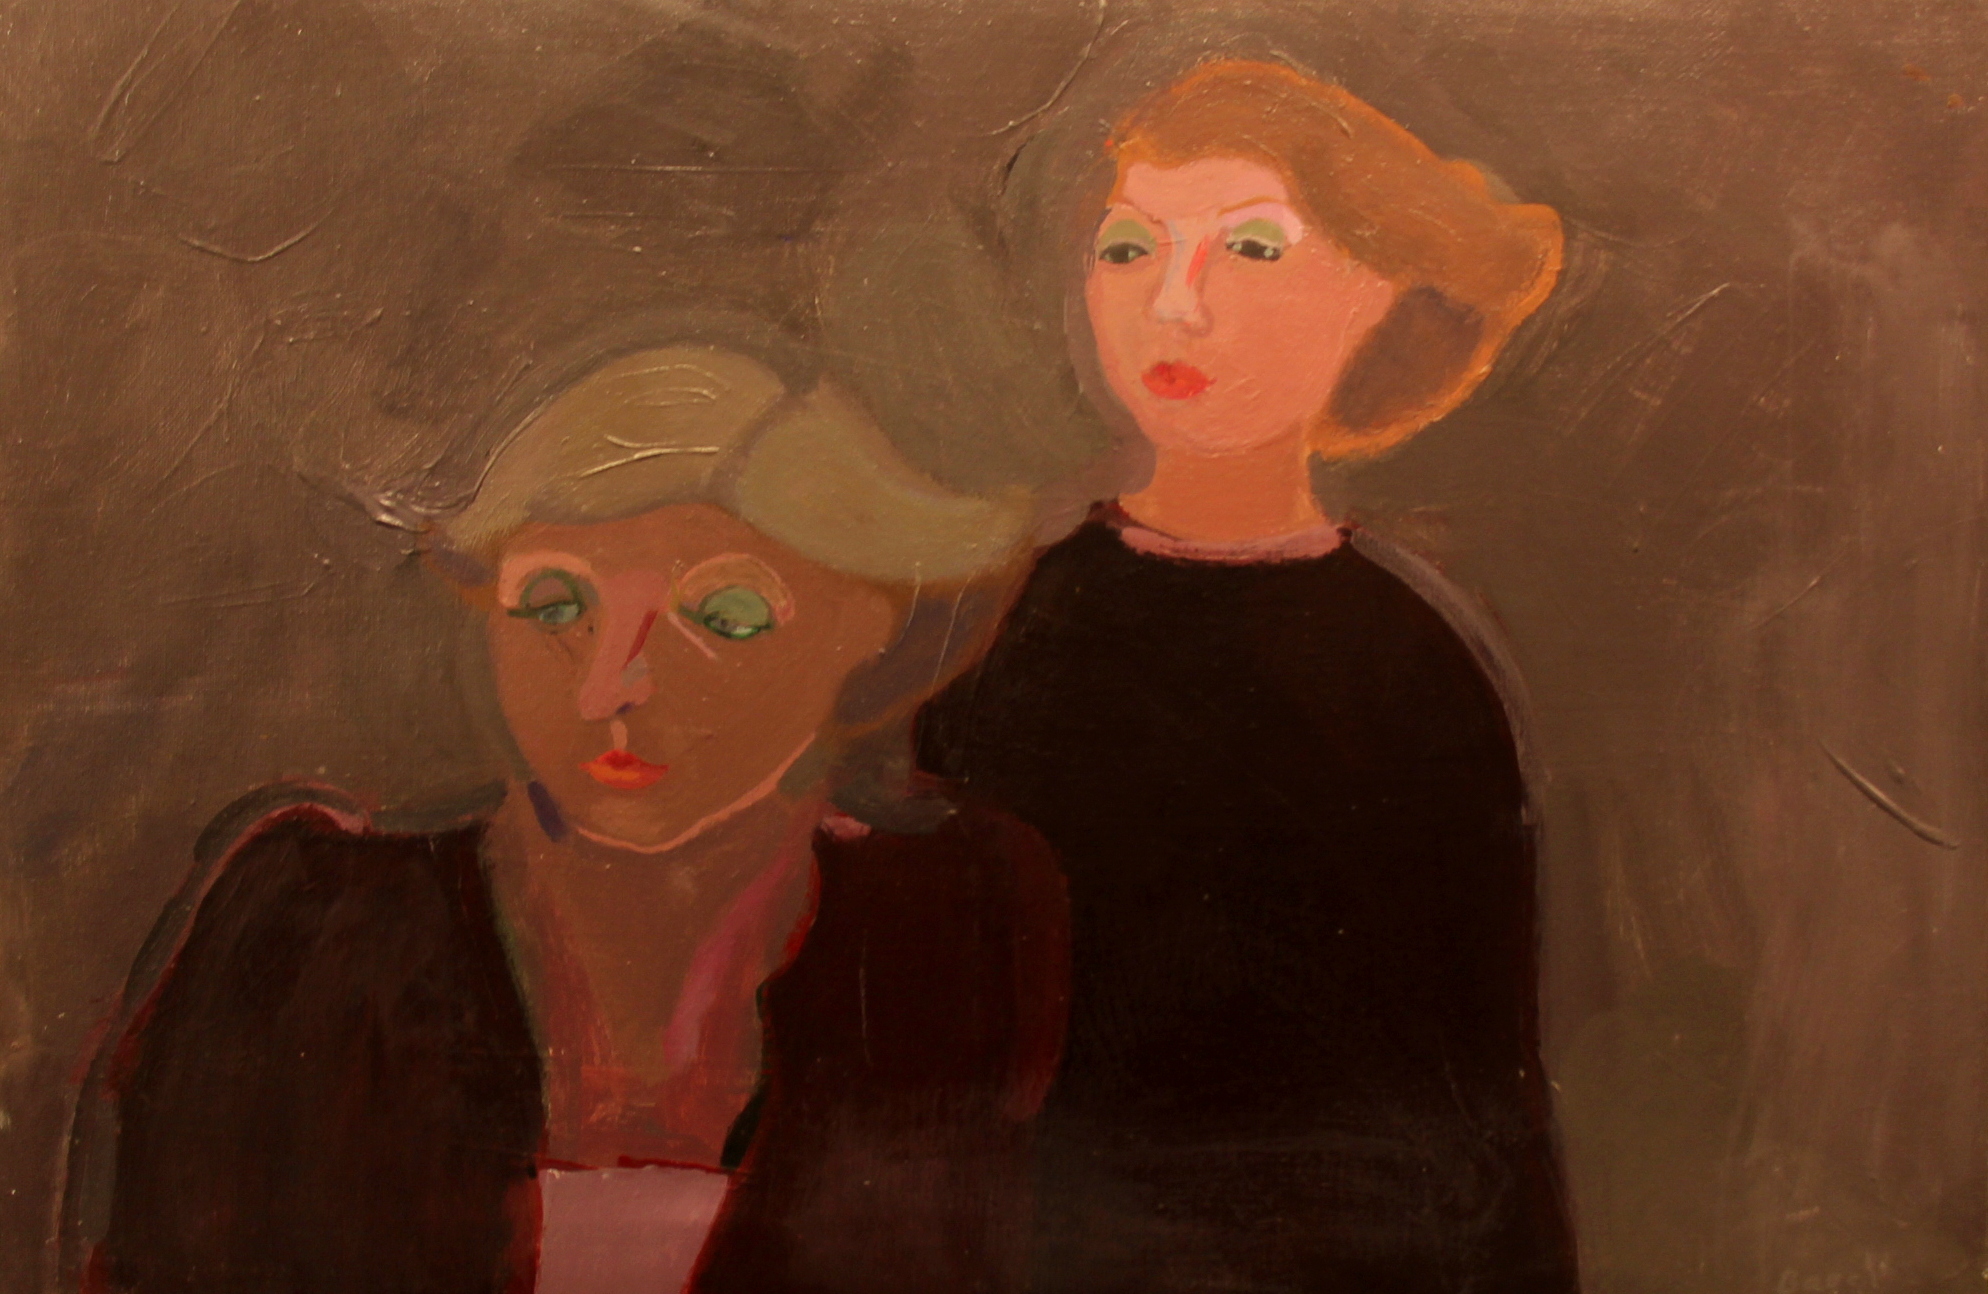 Balz Baechi, Renée und Corinne Ziegler, 1977
Oil on canvas
40 x 60 cm